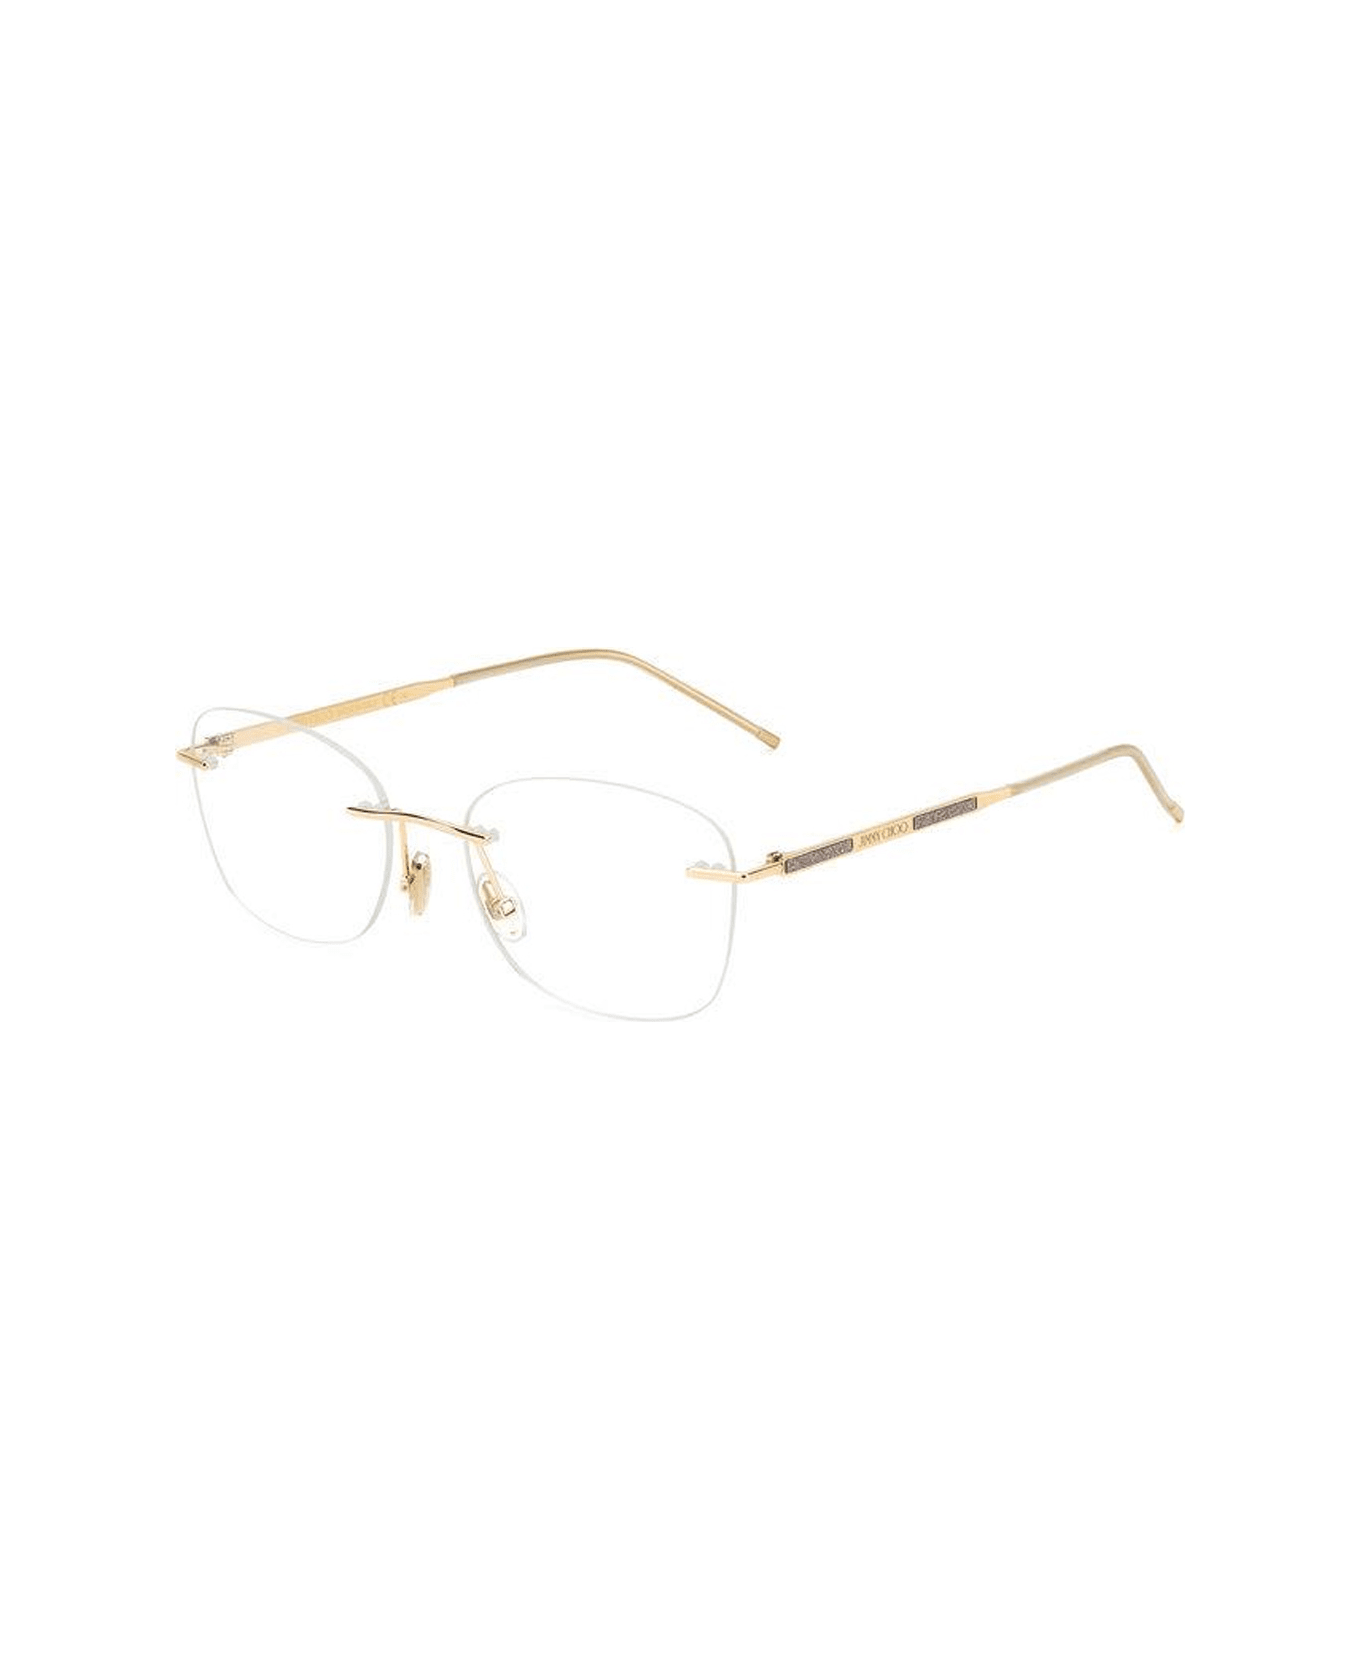 Jimmy Choo Eyewear Jc365 Ddb/18 Glasses - Oro